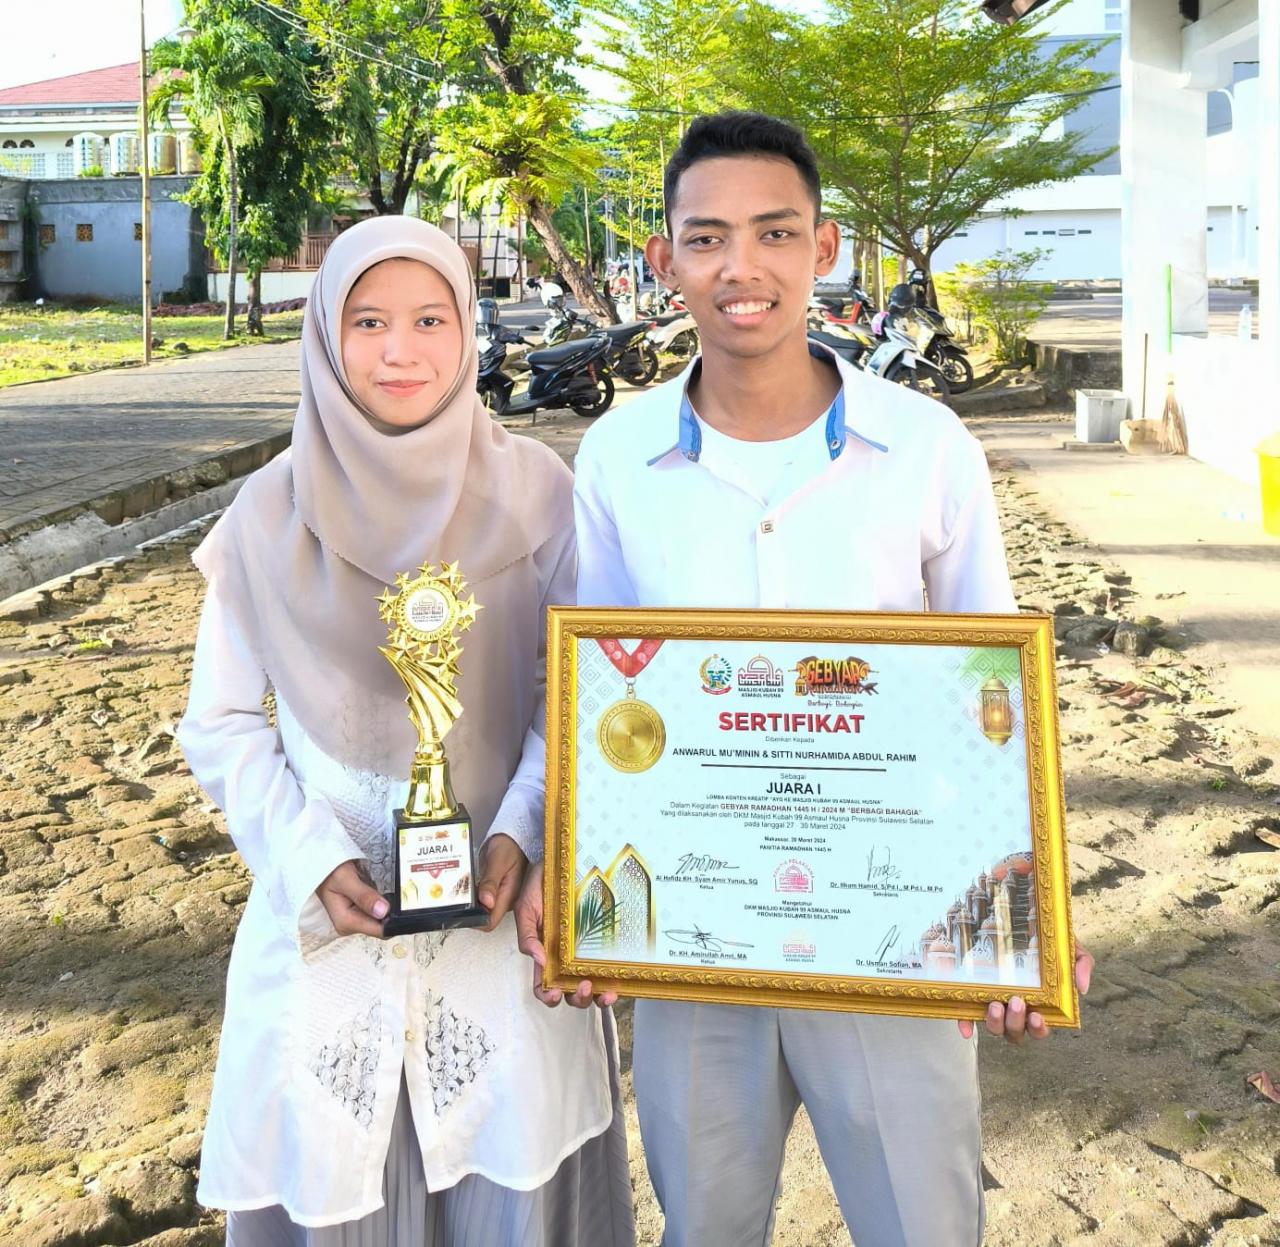 Mahasiswa Keperawatan Raih Penghargaan Dari Gubernur Sulsel Sebagai Juara 1 Lomba Konten Ayo Ke Mesj